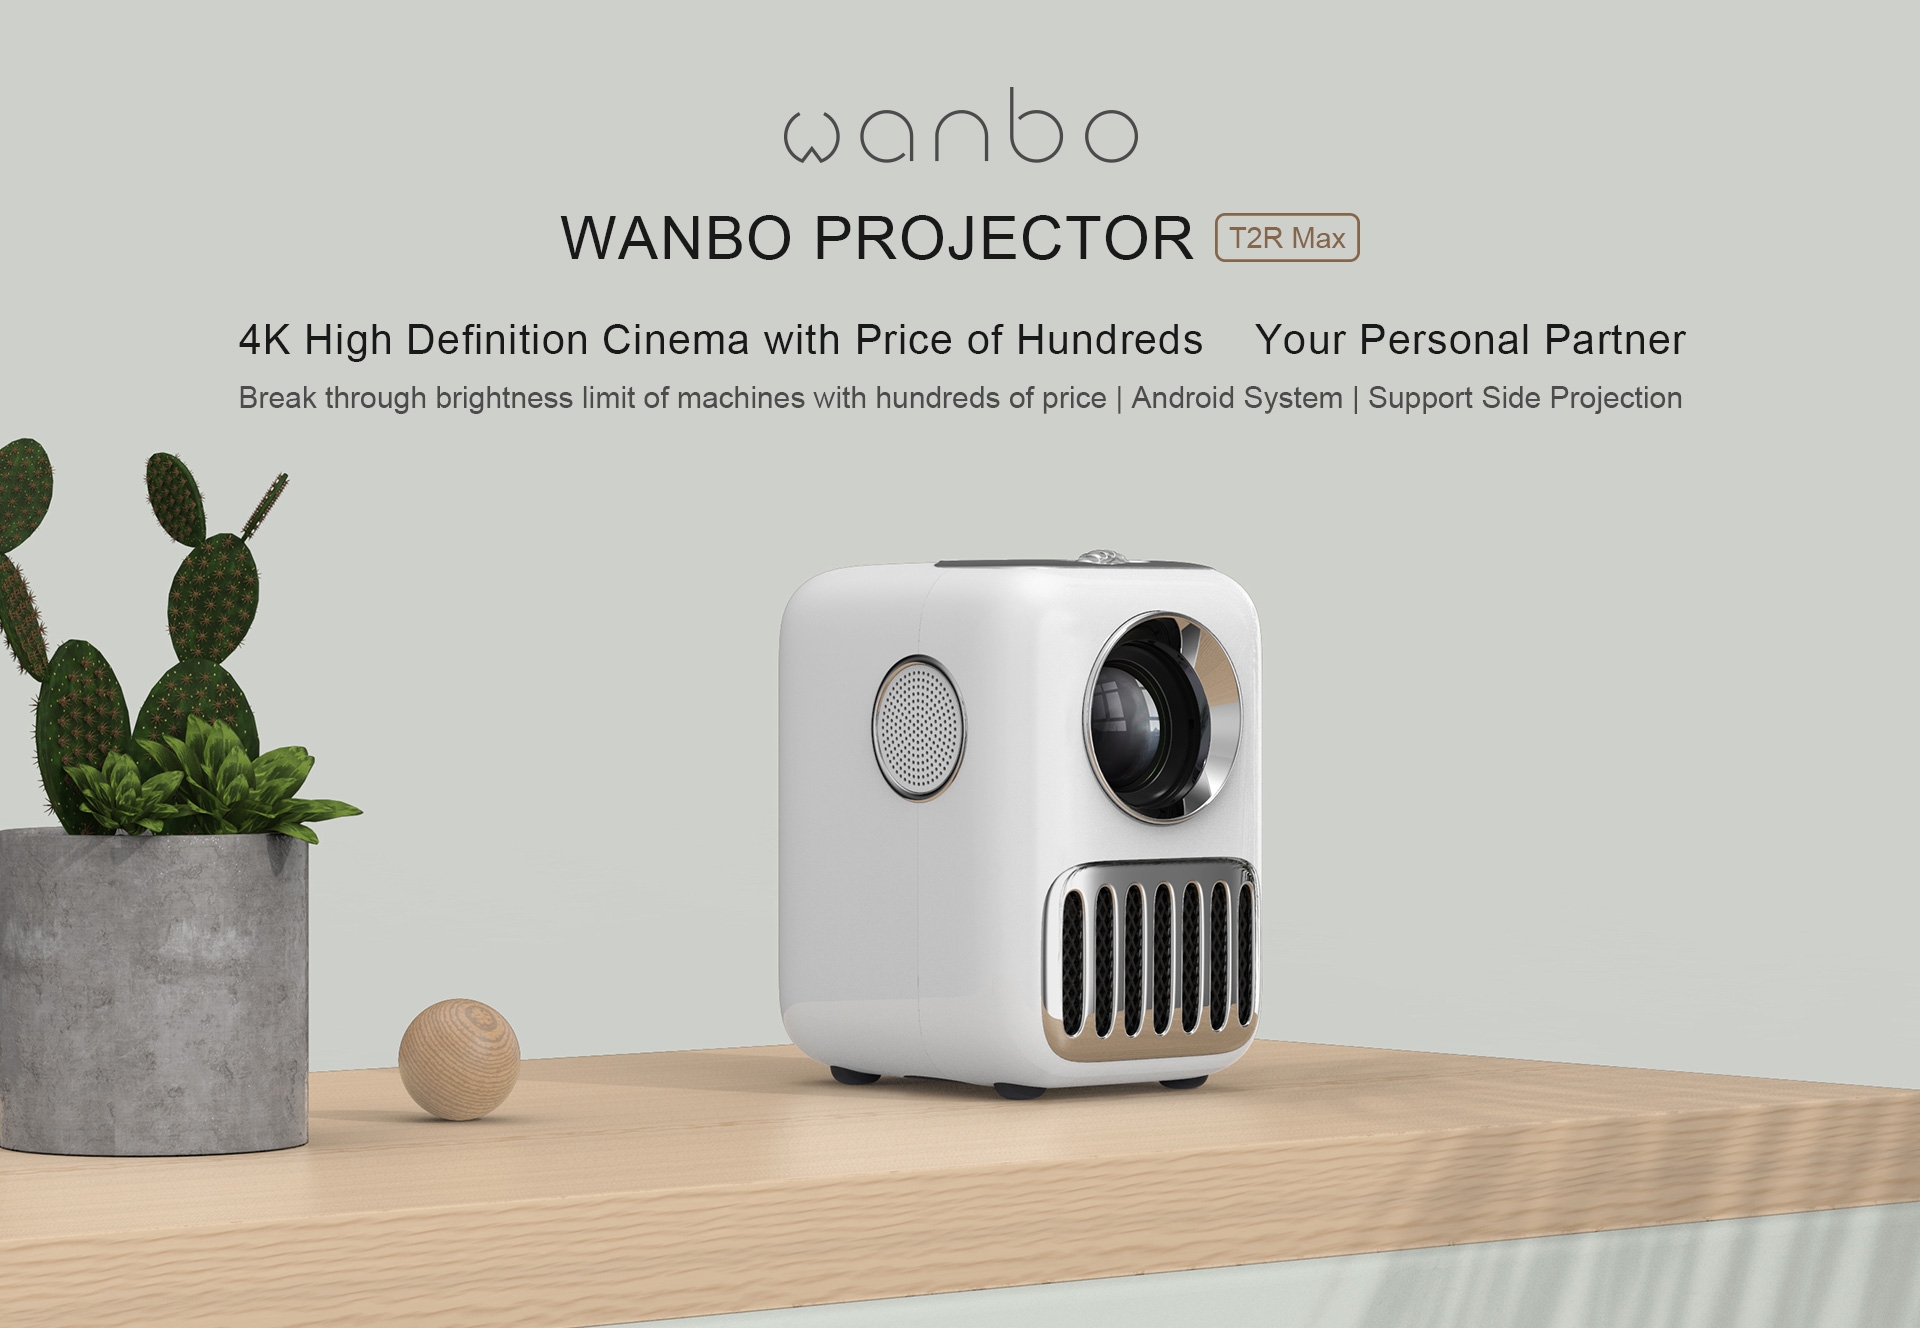 بروجكتر منزلي اندرويد ذكي وانبو تي 2 ار ماكس 120 بوصة Wanbo T2R Max Android 9.0 250 Ansi Lumens